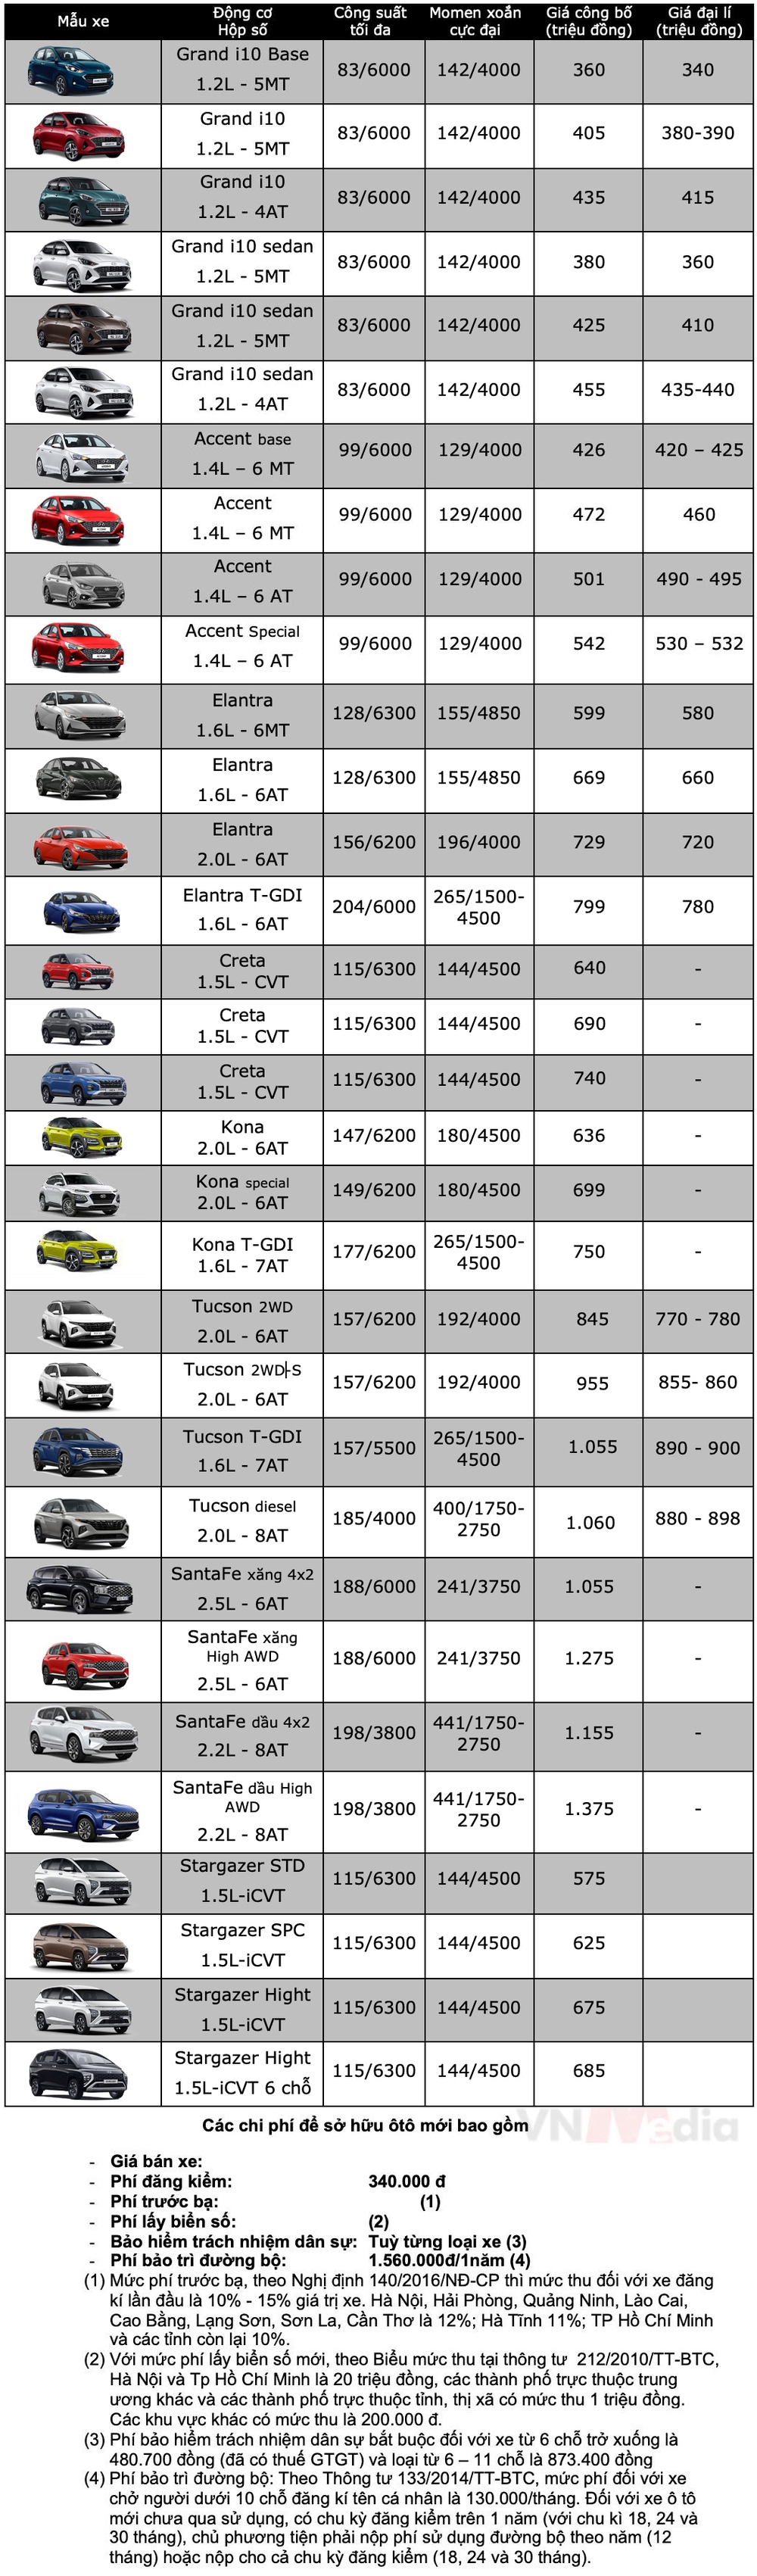 Bảng giá xe Hyundai: Hyundai Stargazer được giảm giá 35 triệu đồng - Ảnh 2.